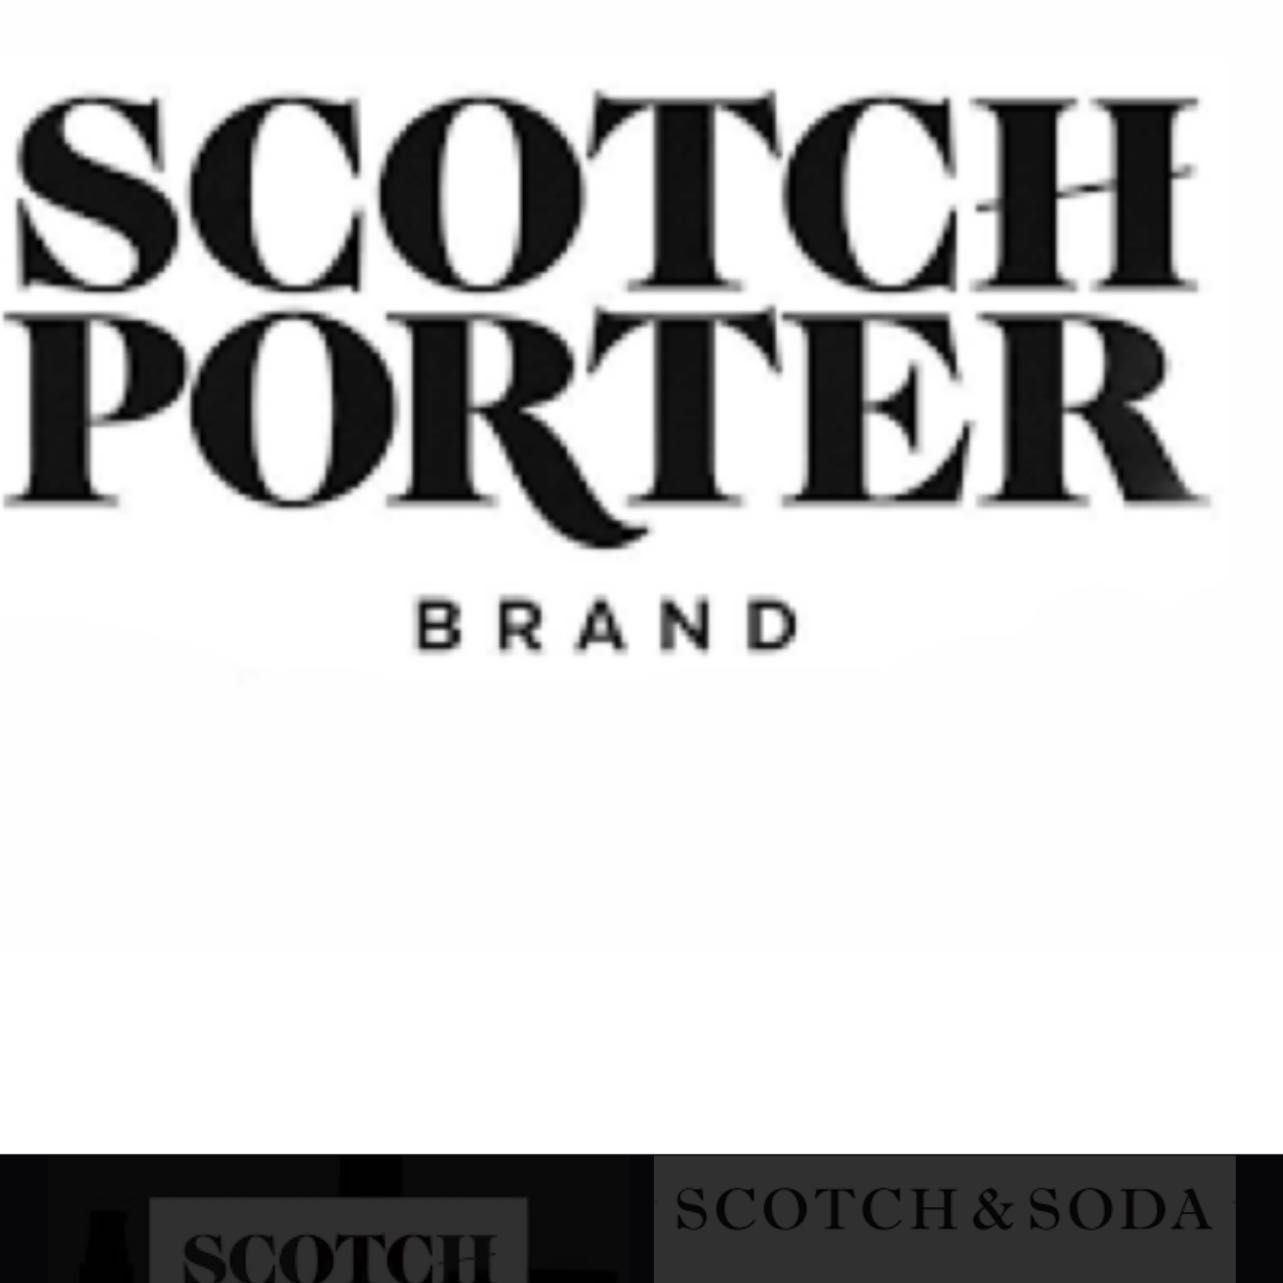 Scotch Porter beard shampoo,conditioner service portfolio